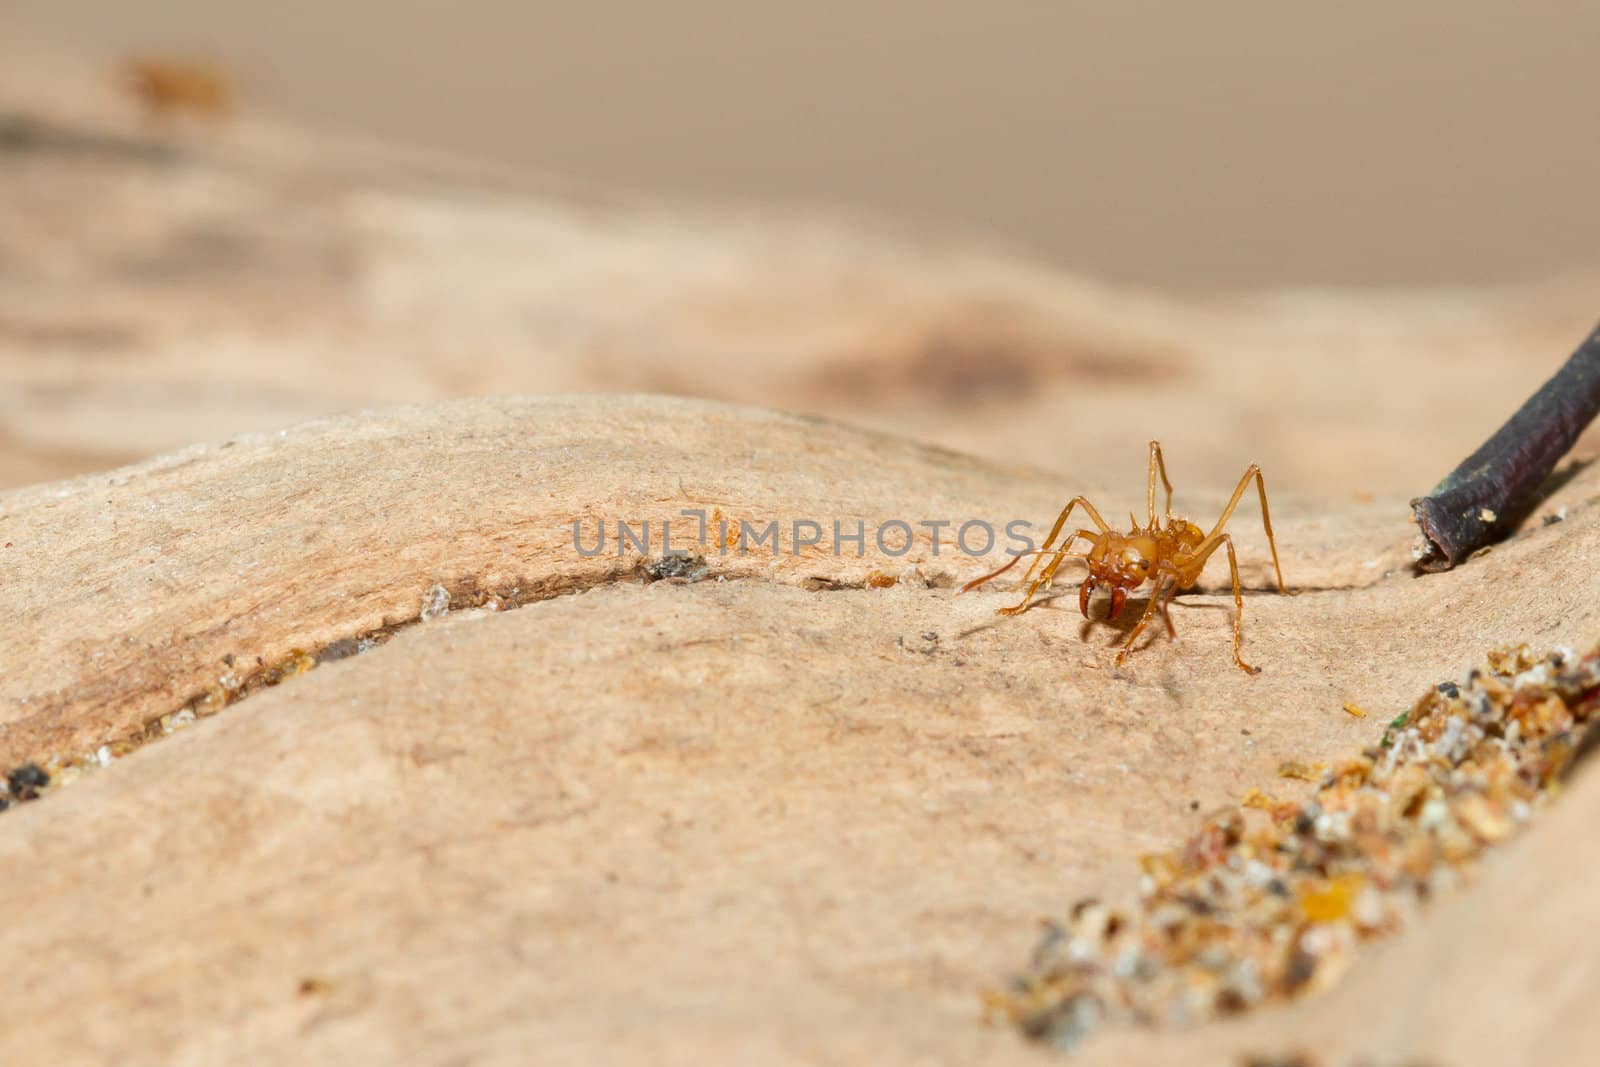 A leaf cutter ant in a dutch zoo